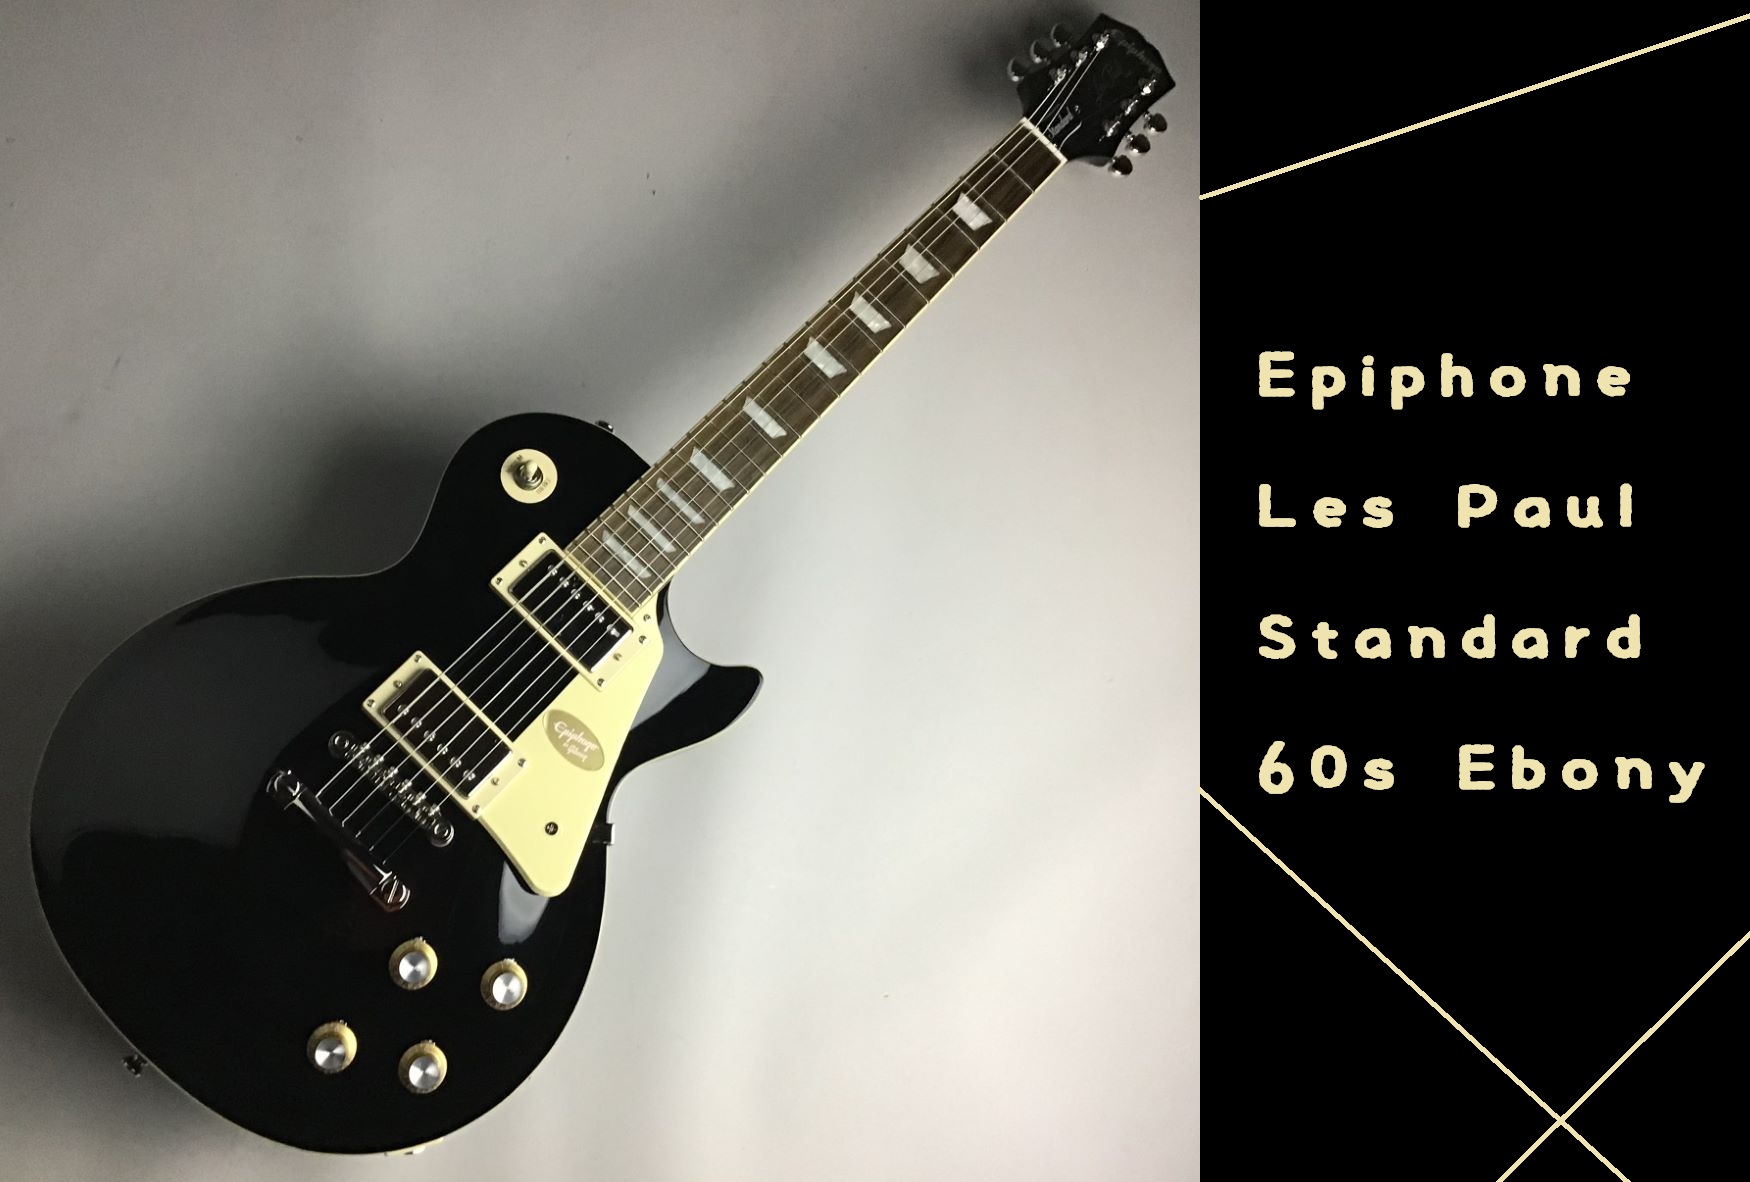 島村楽器大分店に、Epiphone(エピフォン)のエレキギター、『Les Paul Standard 60s Ebony』が入荷いたしました！ “Inspired by Gibson”コレクションから新たにリリースされたエピフォン・レスポール・スタンダード 60sは、往時のレスポール・サウンドを現代 […]